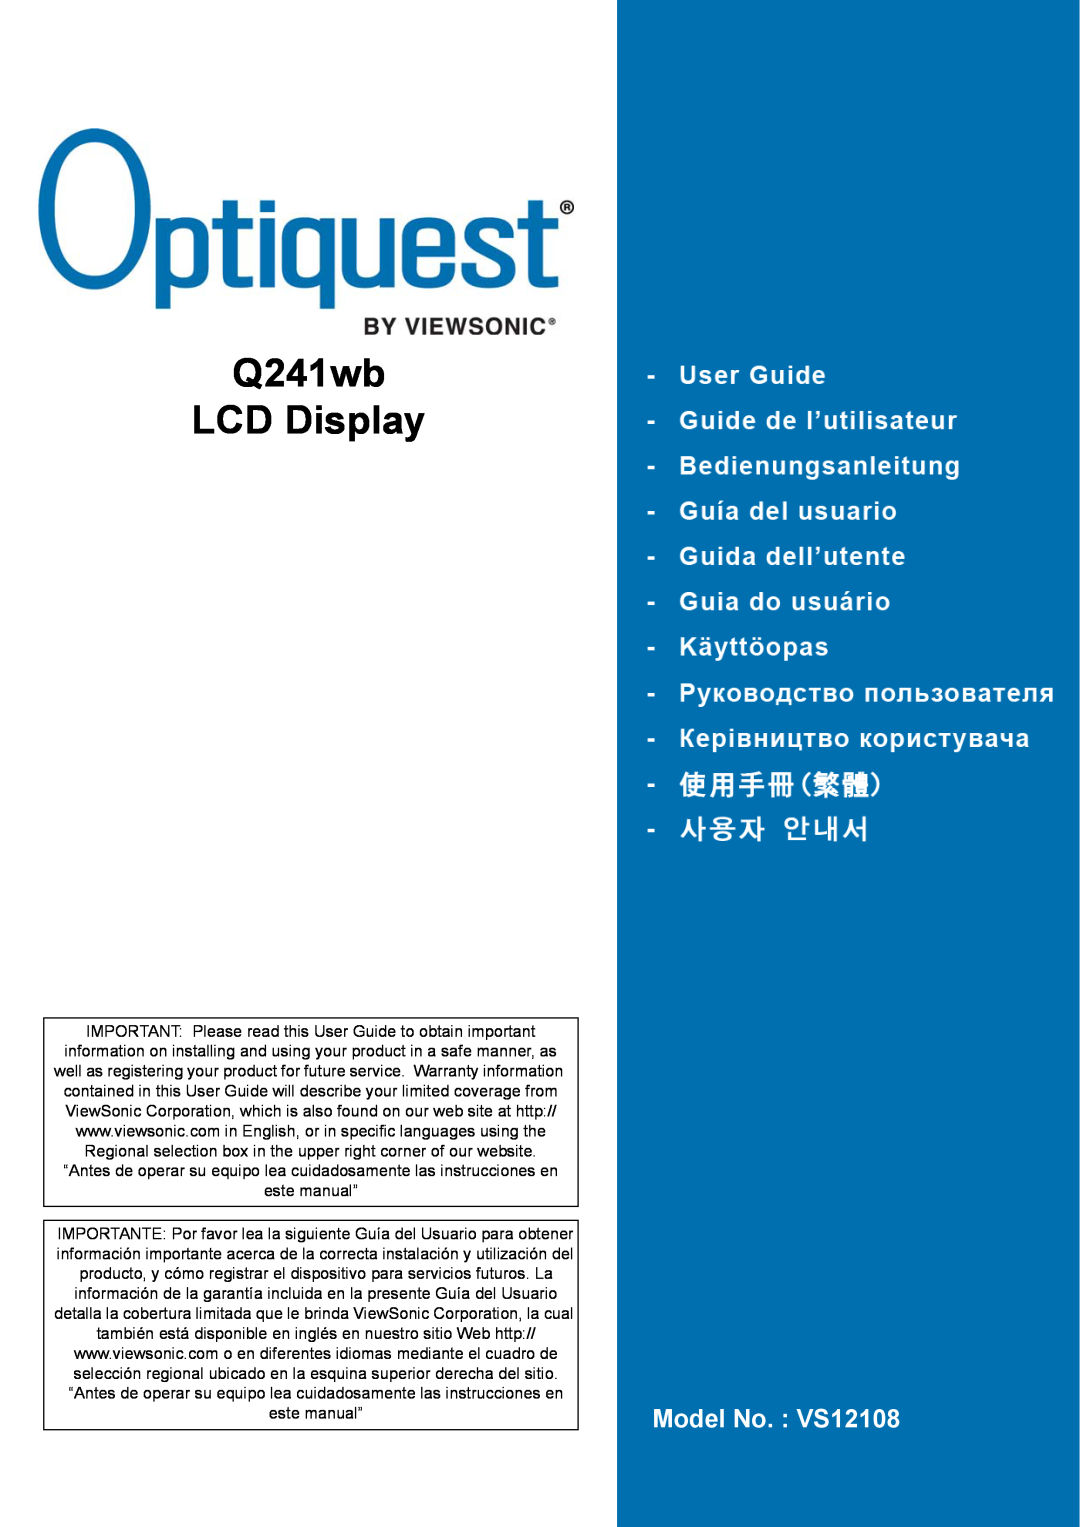 ViewSonic warranty Q241wb LCD Display, Model No. VS12108 